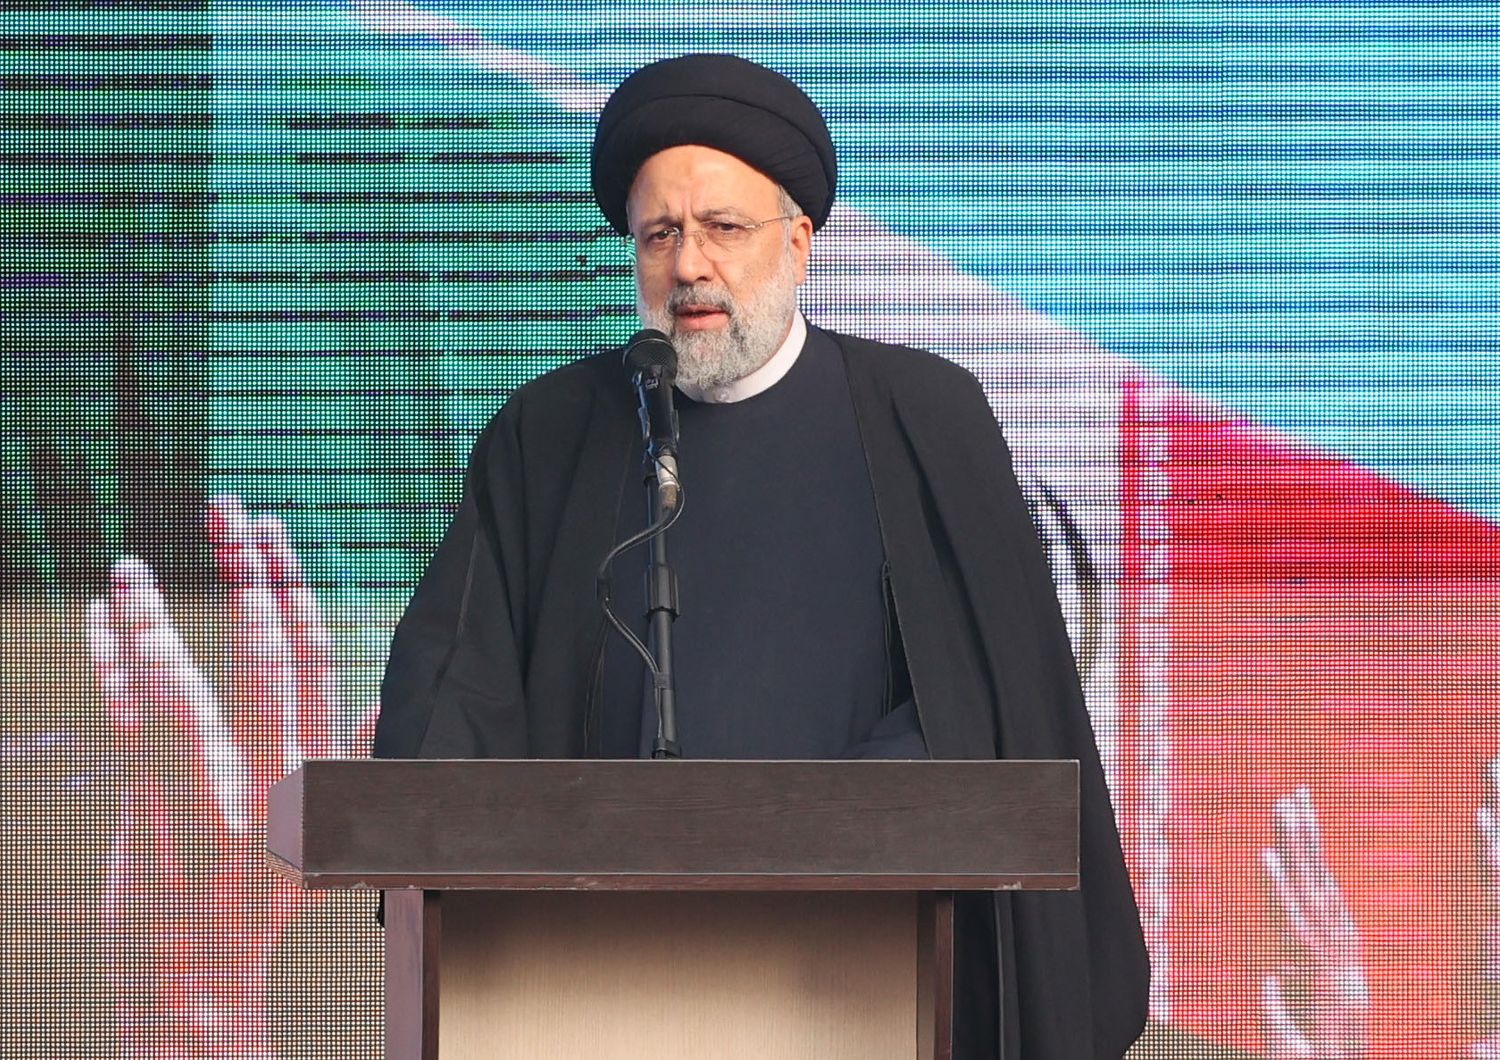 presidente iraniano Raisi non avremo misericordia per chi protesta